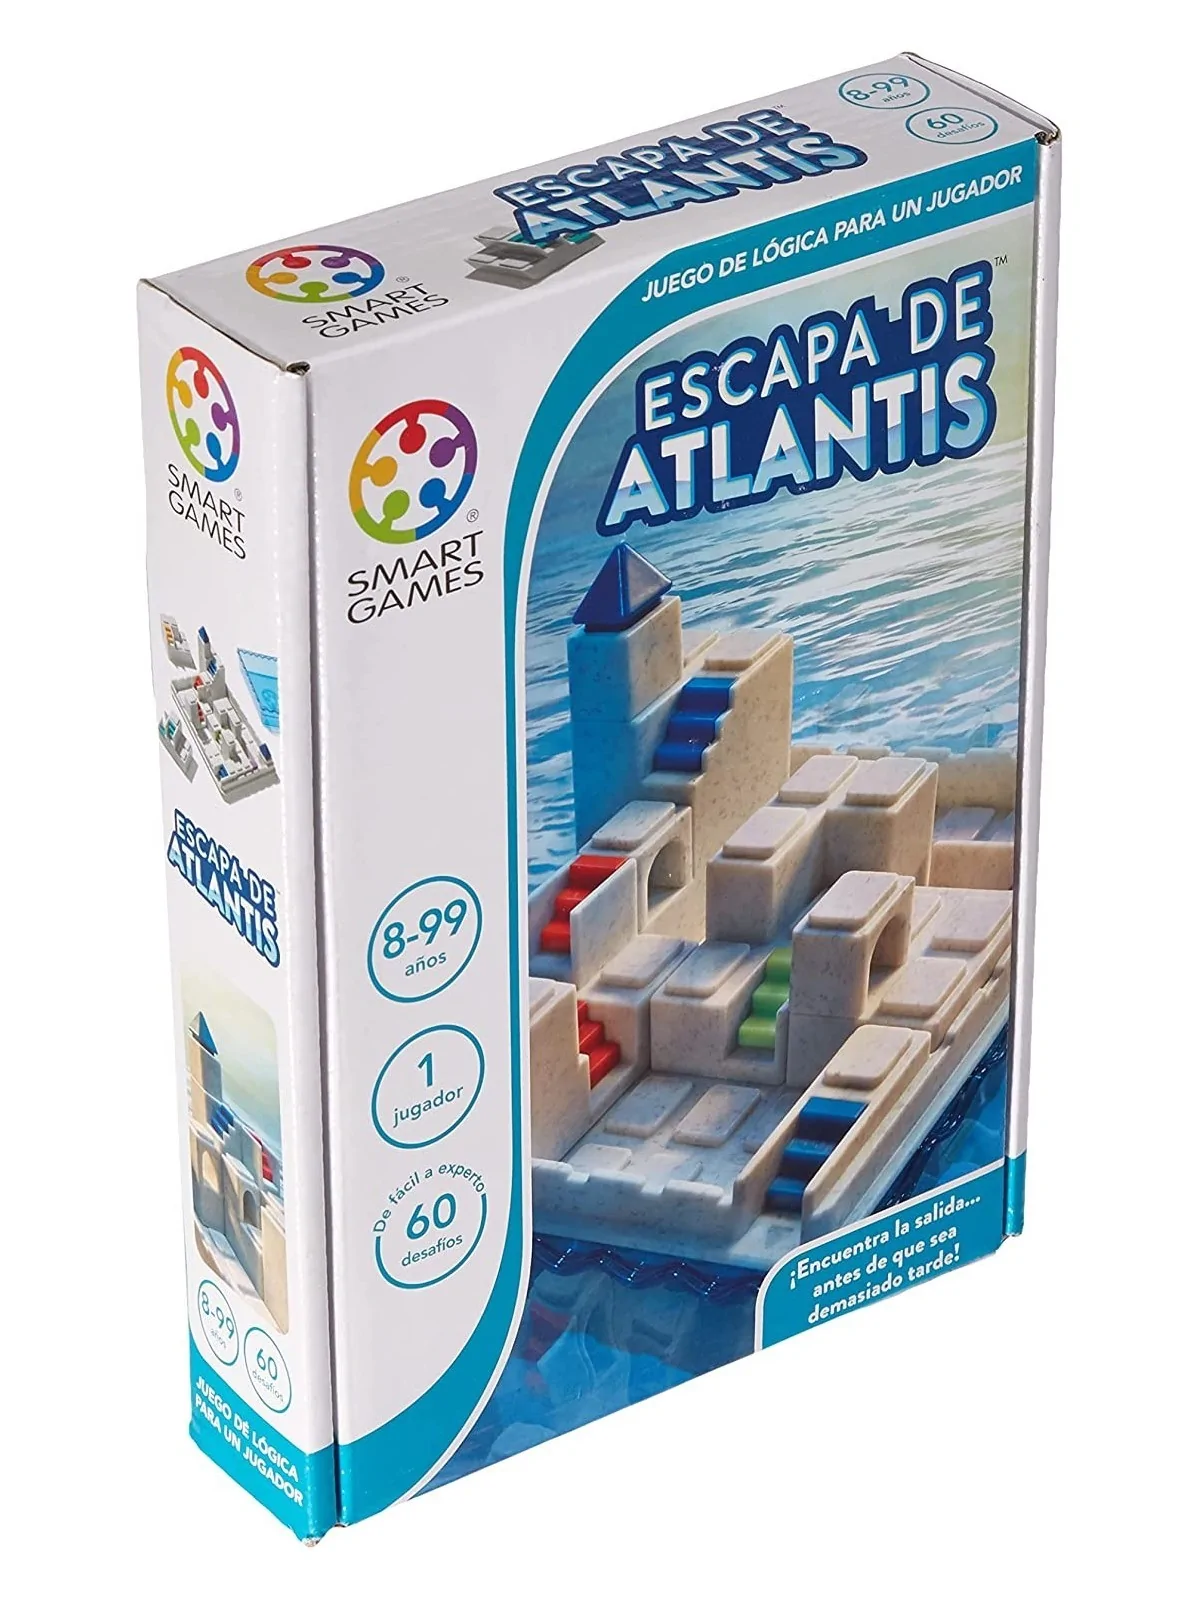 Comprar Smart Games: Escapa de Atlantis barato al mejor precio 16,95 €